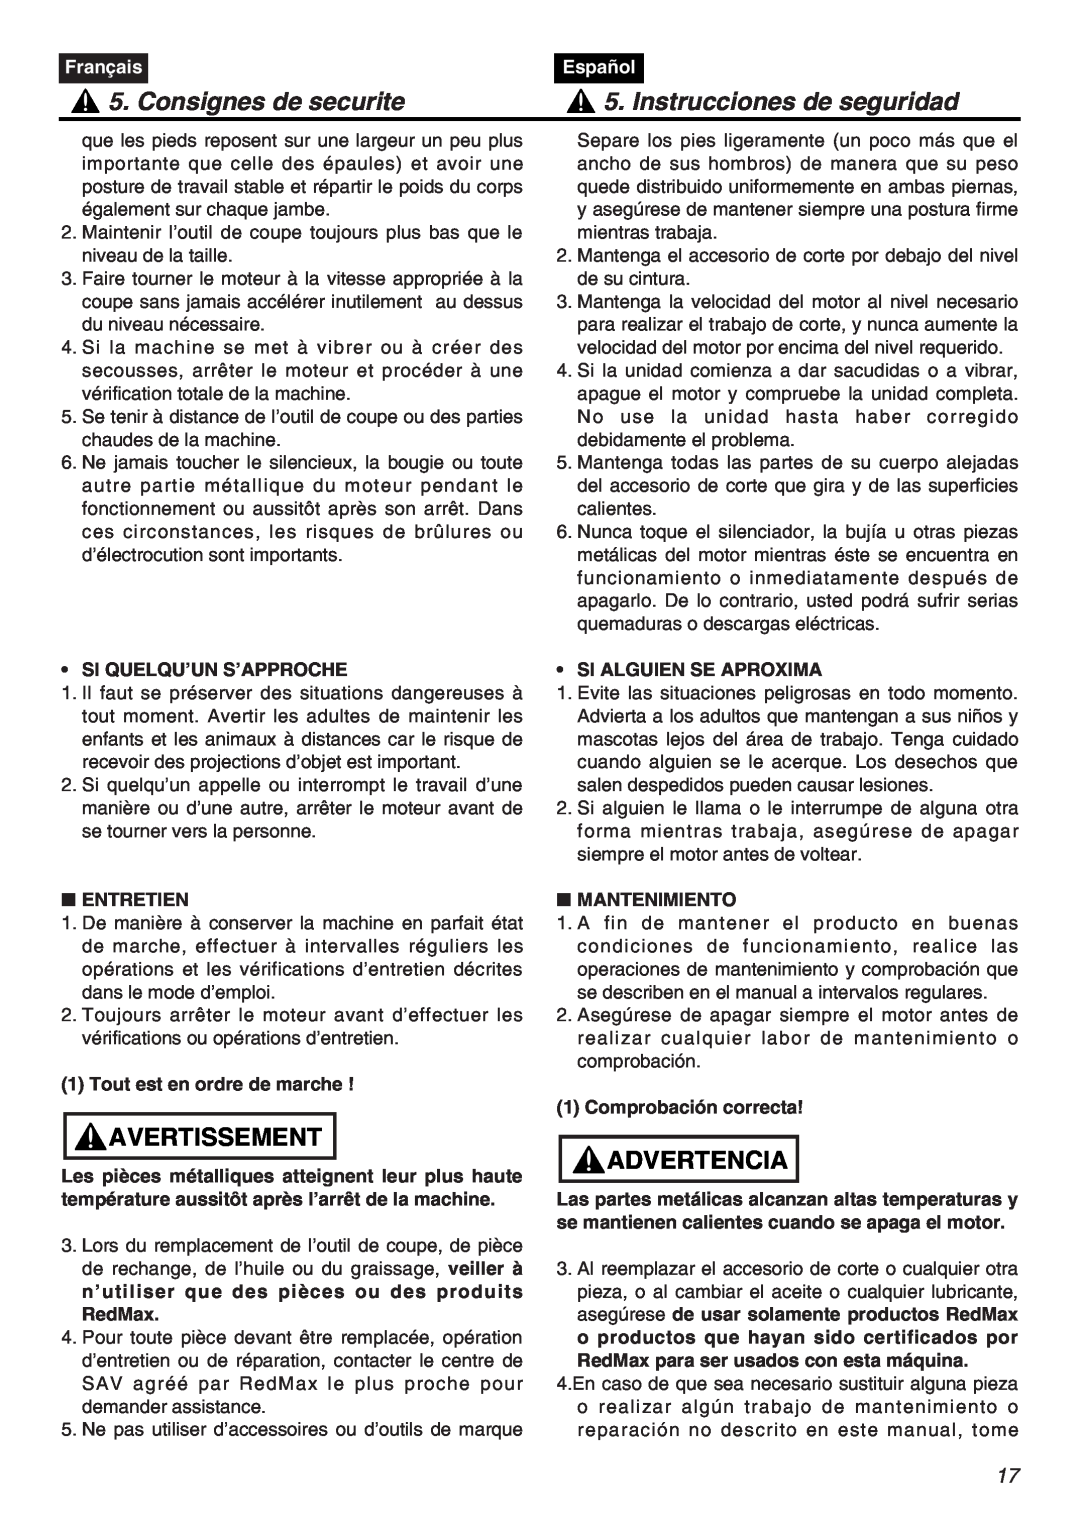 RedMax EXZ2401S-PH manual Consignes de securite, Instrucciones de seguridad, Avertissement, Advertencia, Français, Español 